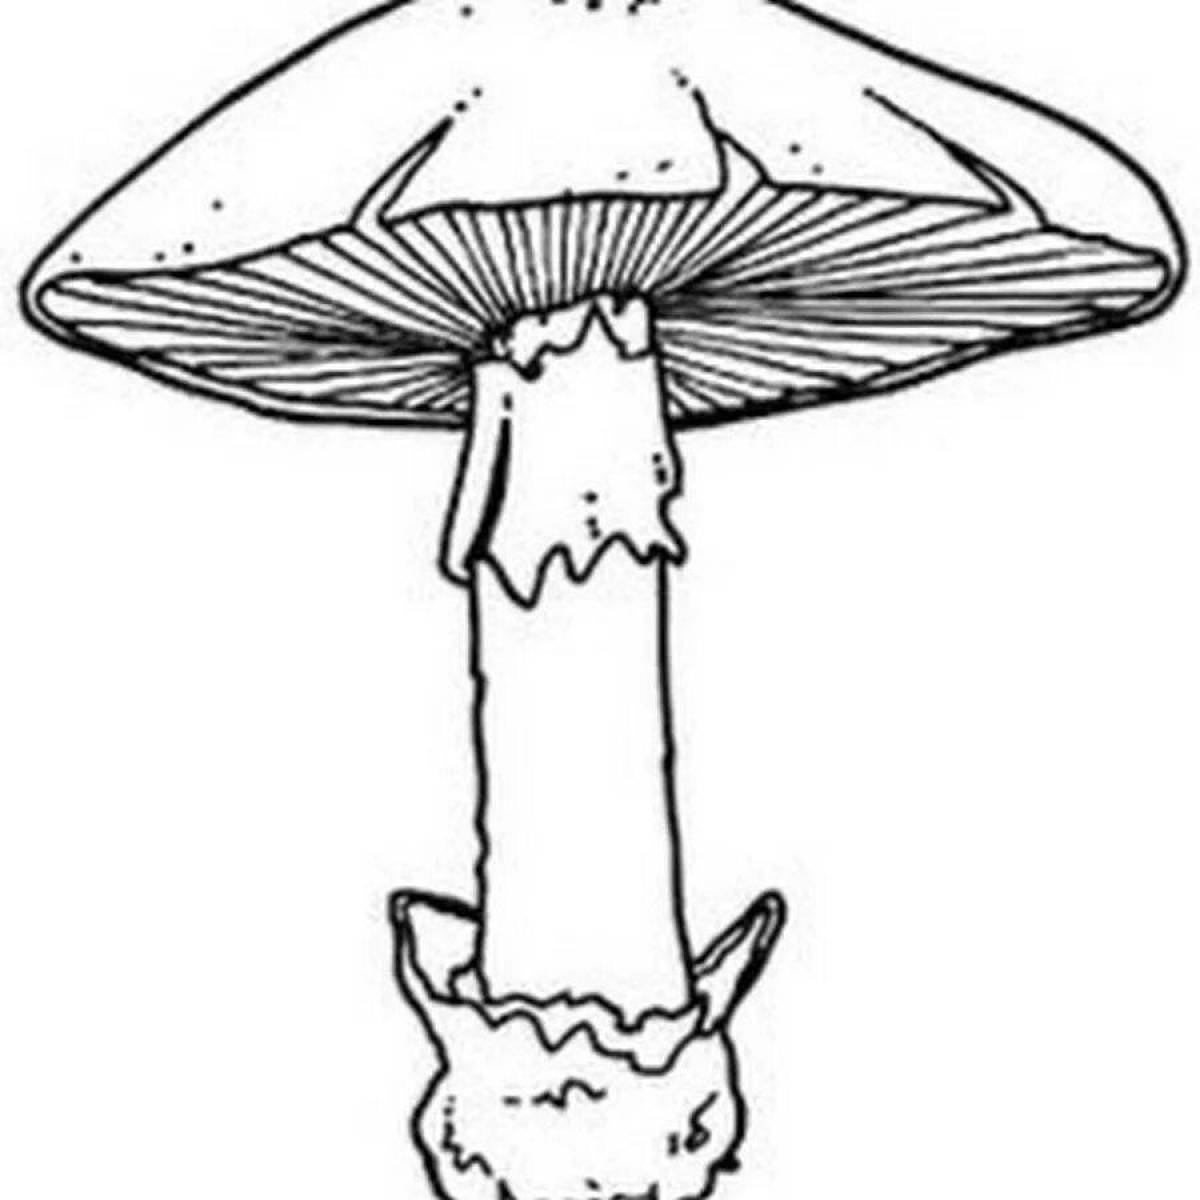 Delicious toadstool mushrooms